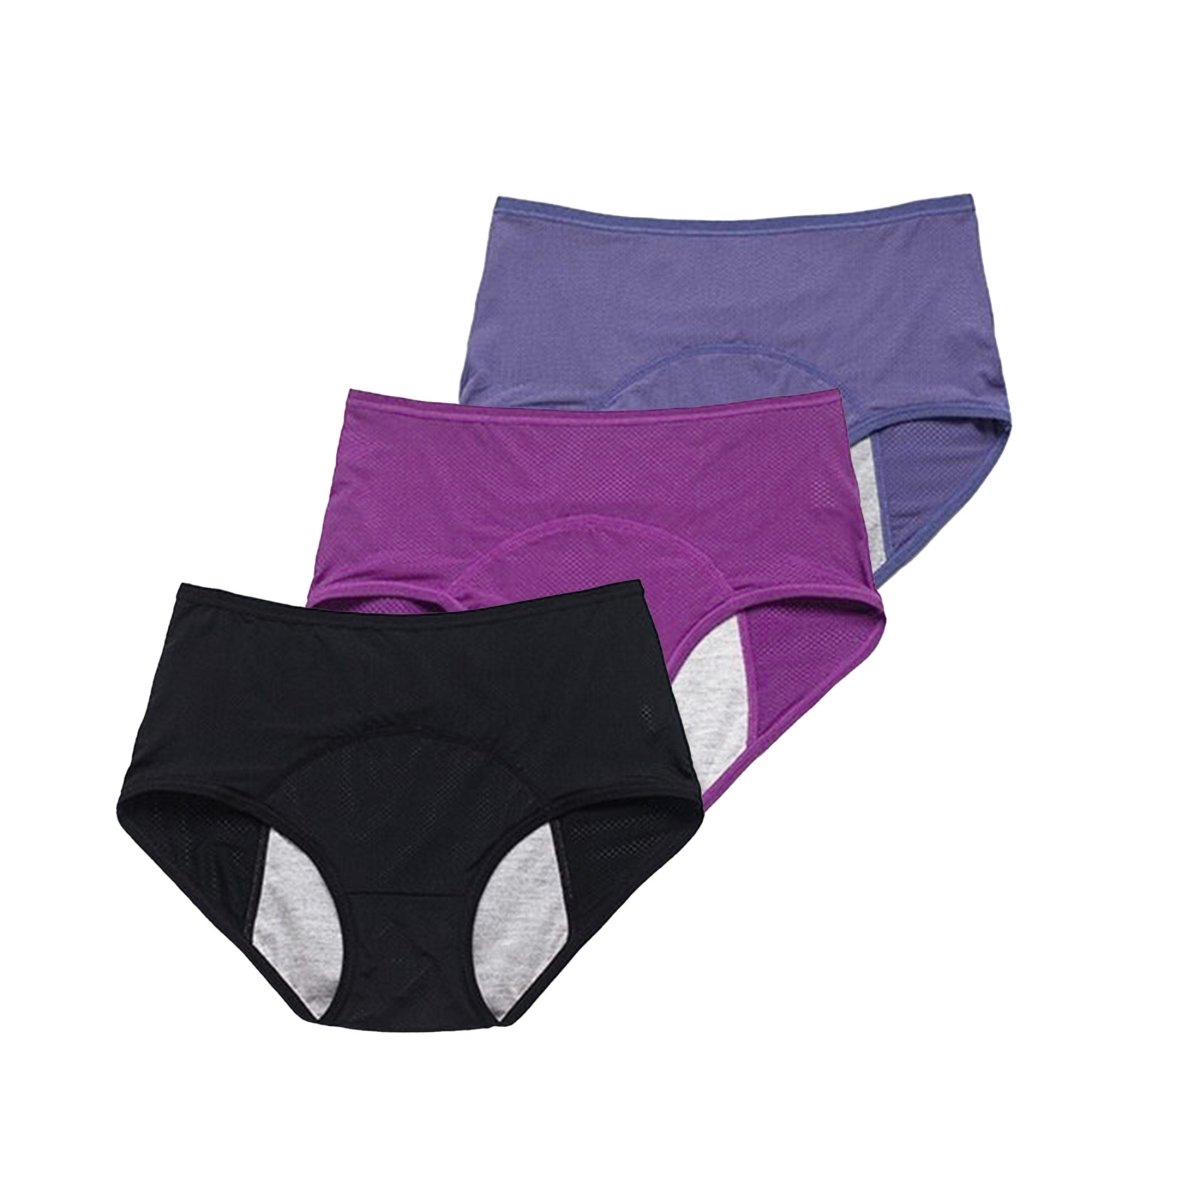 Zorbies Women's Pee Proof Underwear